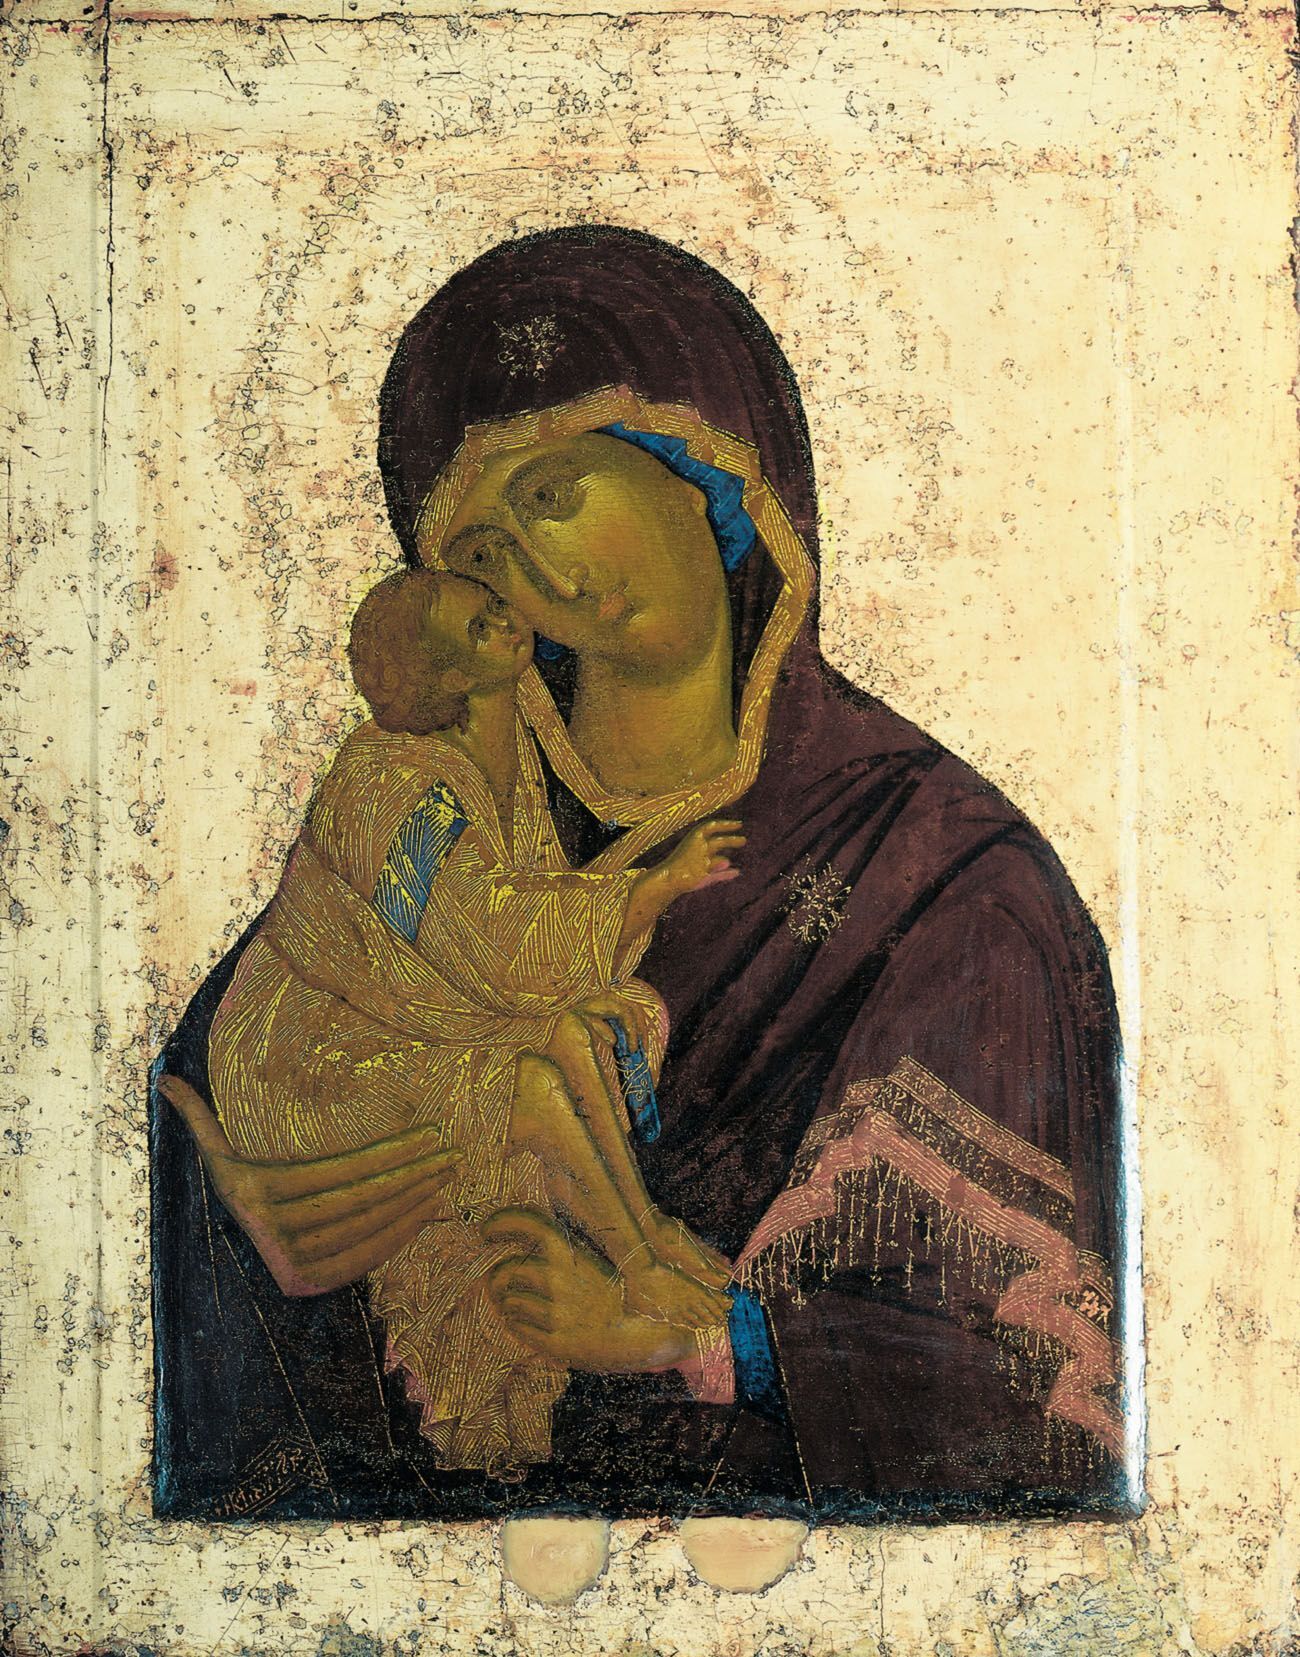 Донська ікона Божої Матері була написана між 1380-1395 роками.